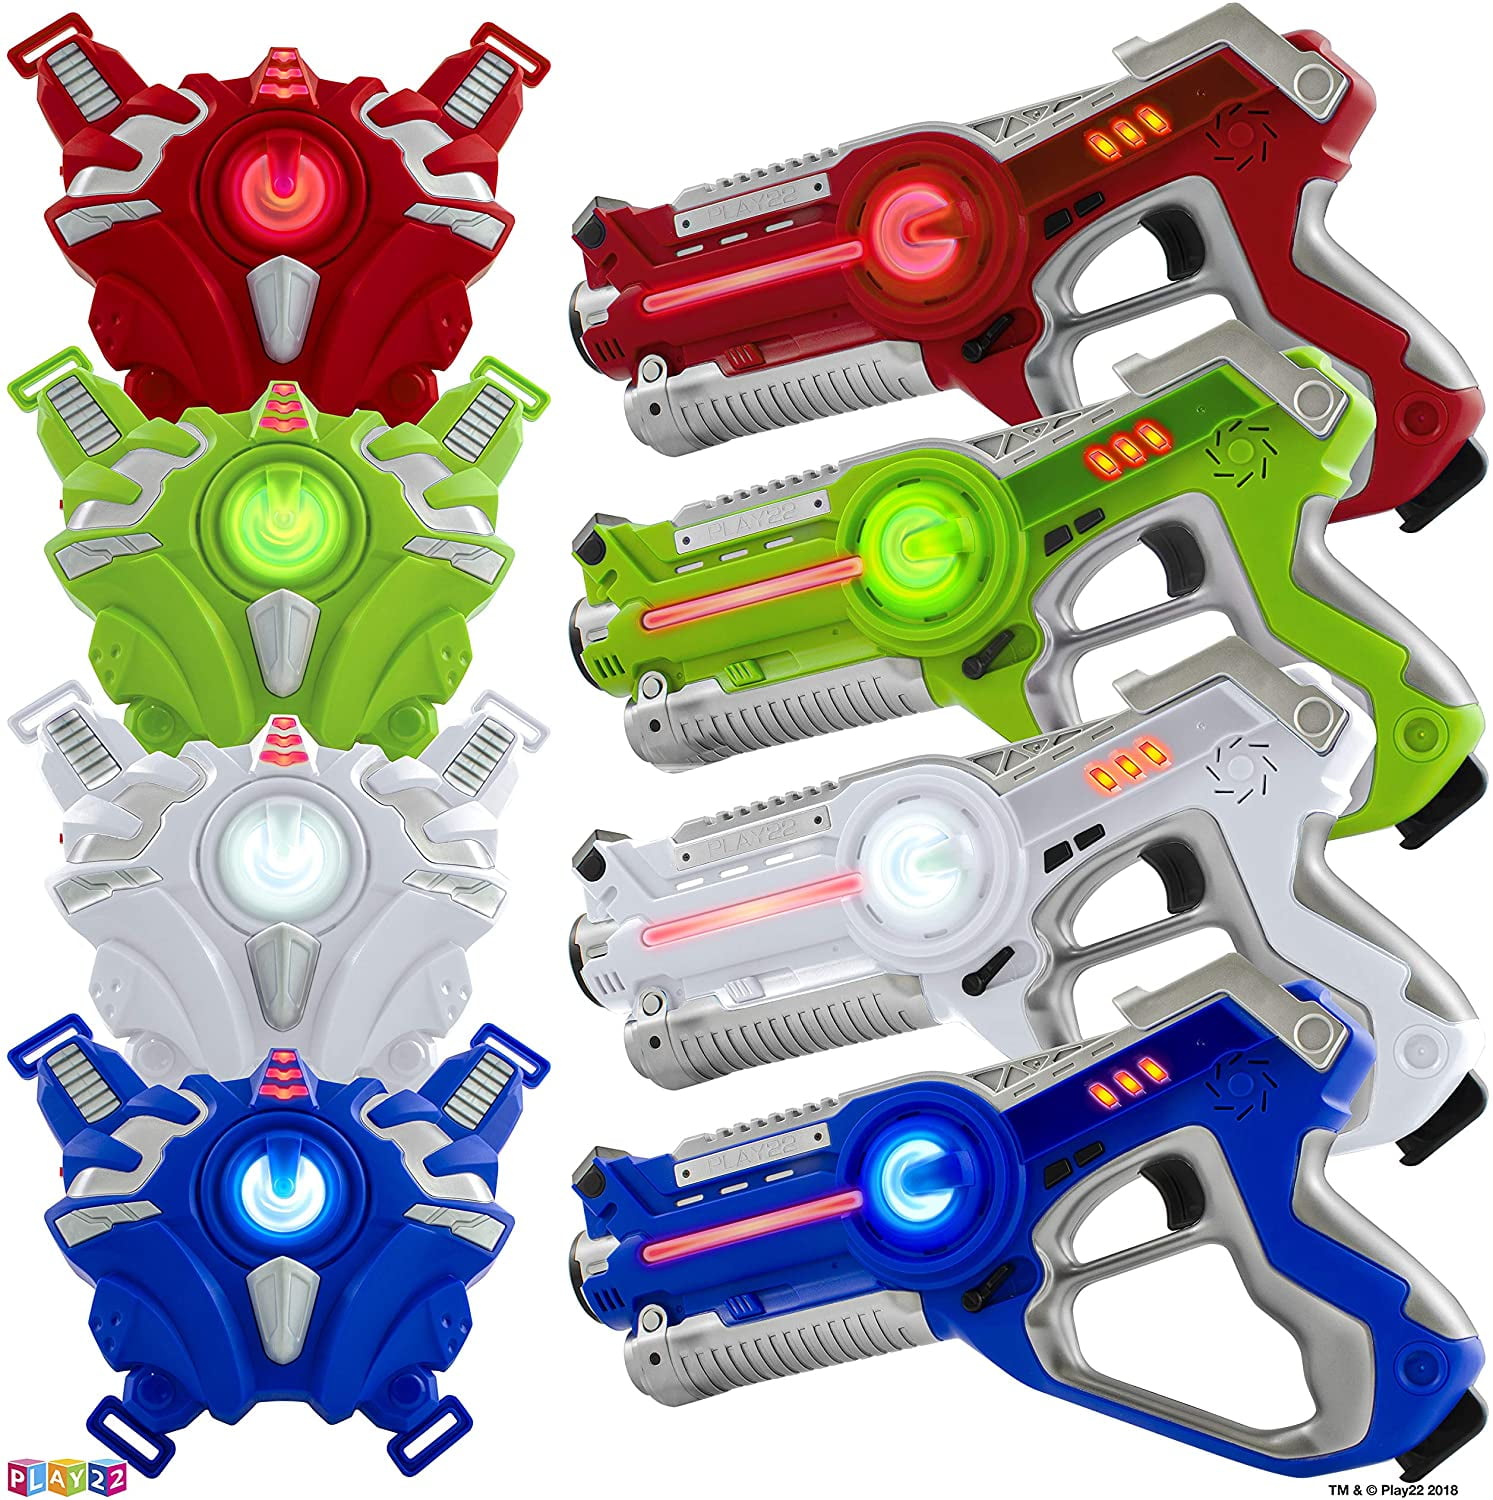 Play22 Laser Tag Sets Gun Vest Laser Infrared Laser Tag Set 4 Guns 4 Vests 